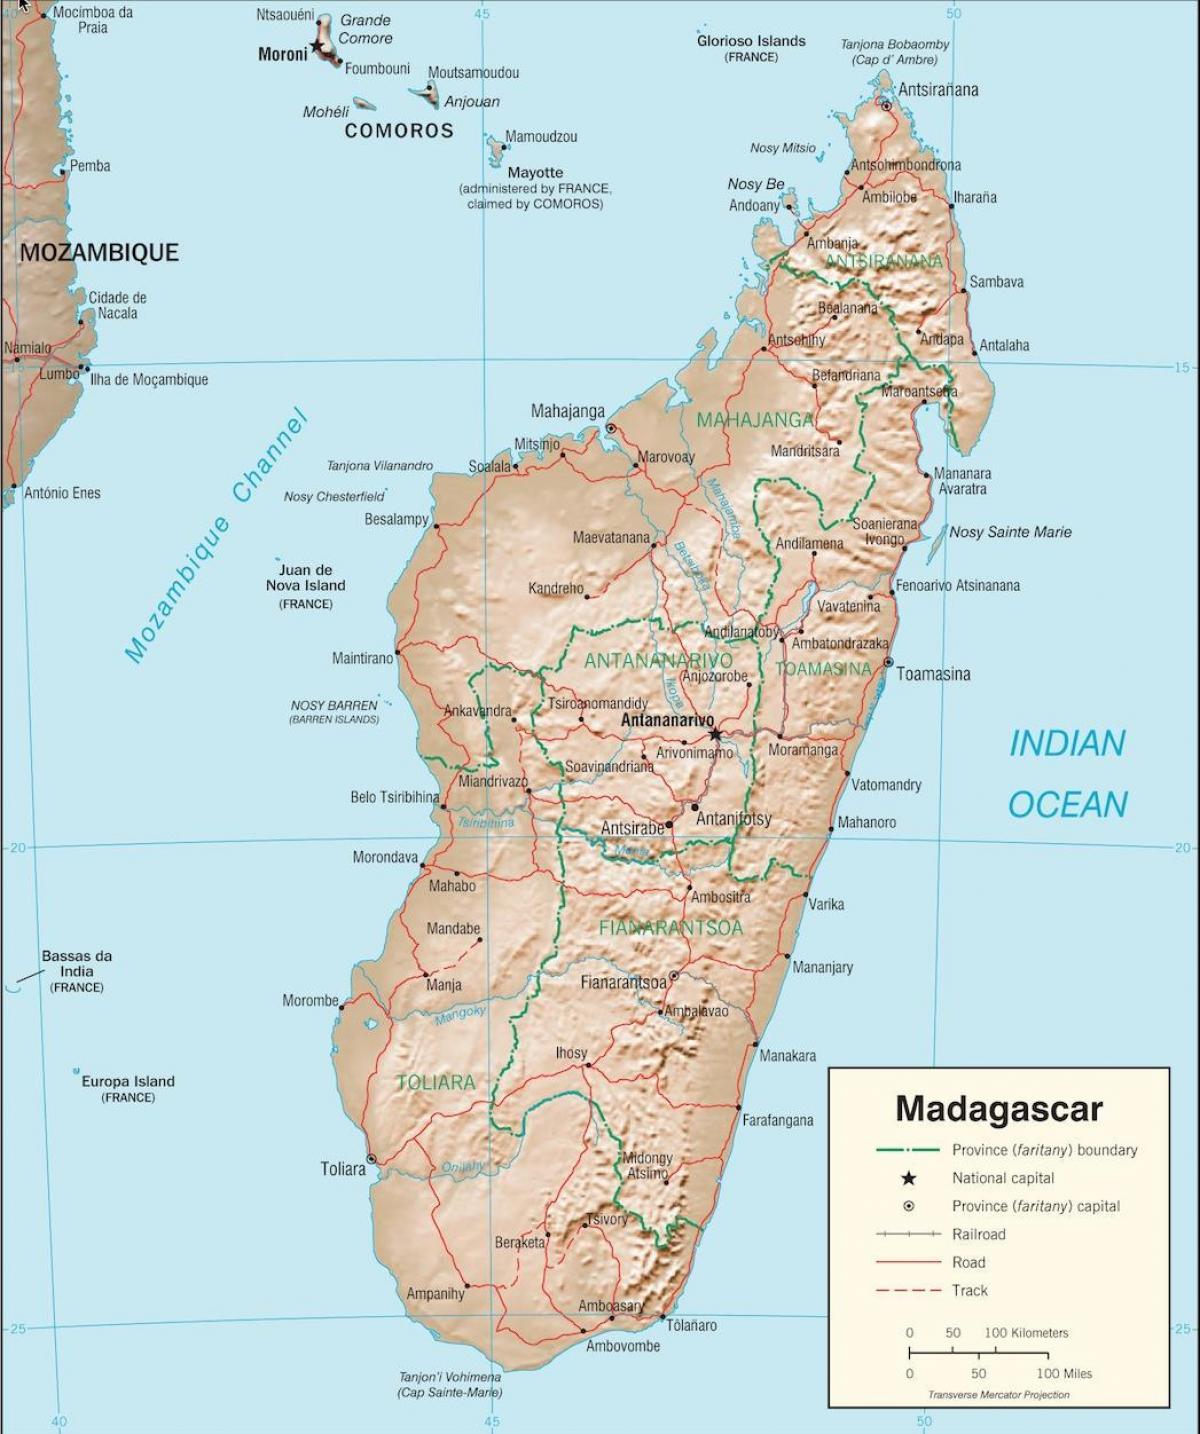 મેડાગાસ્કર દેશ નકશો